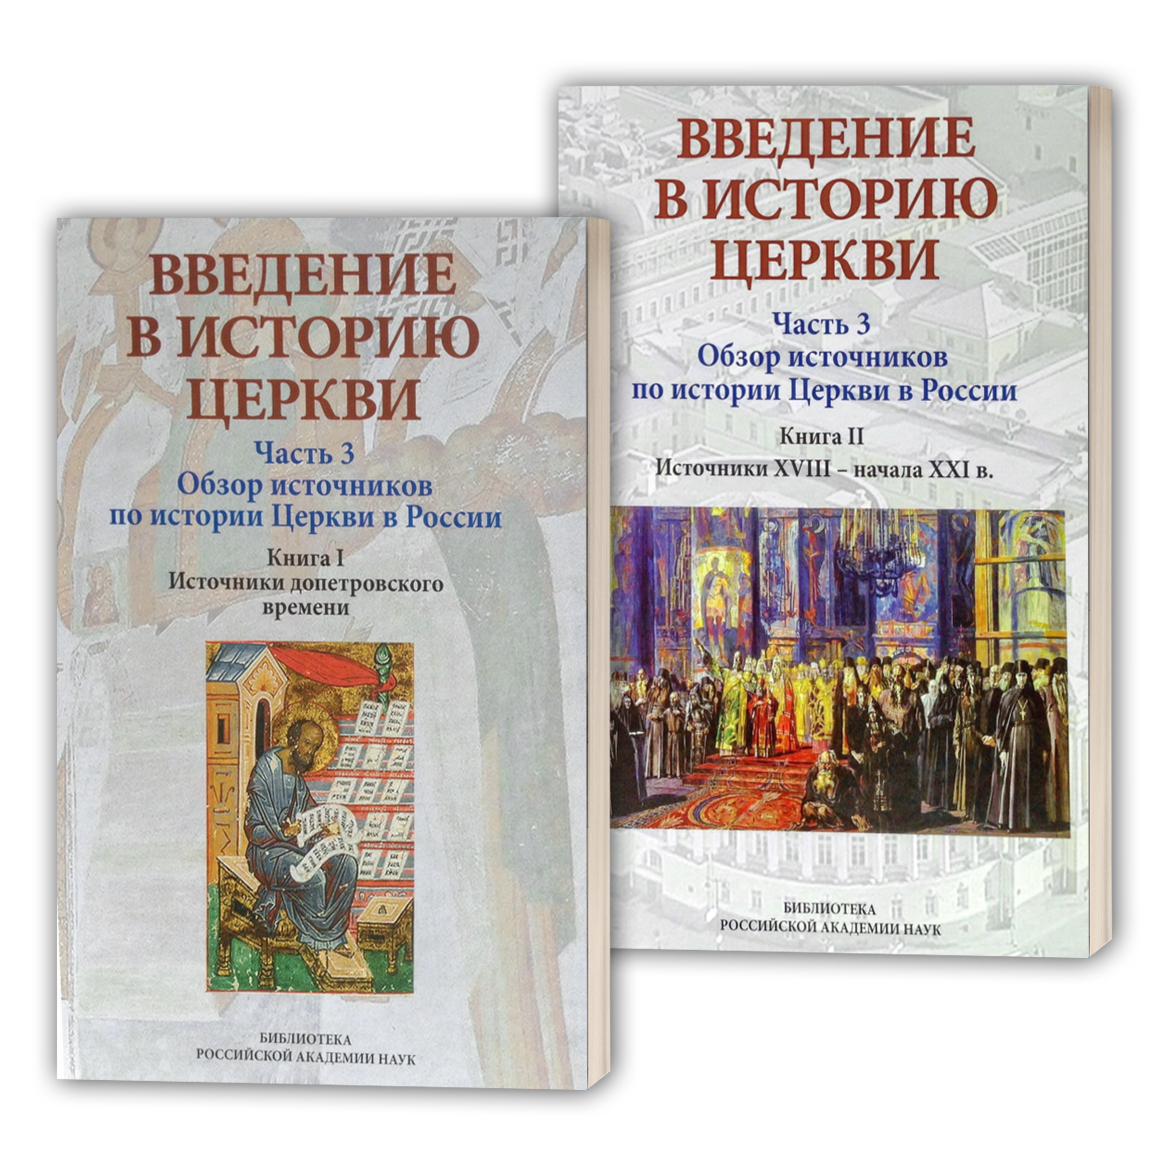 Учебное пособие "Обзор источников по истории Церкви в России" в двух частях